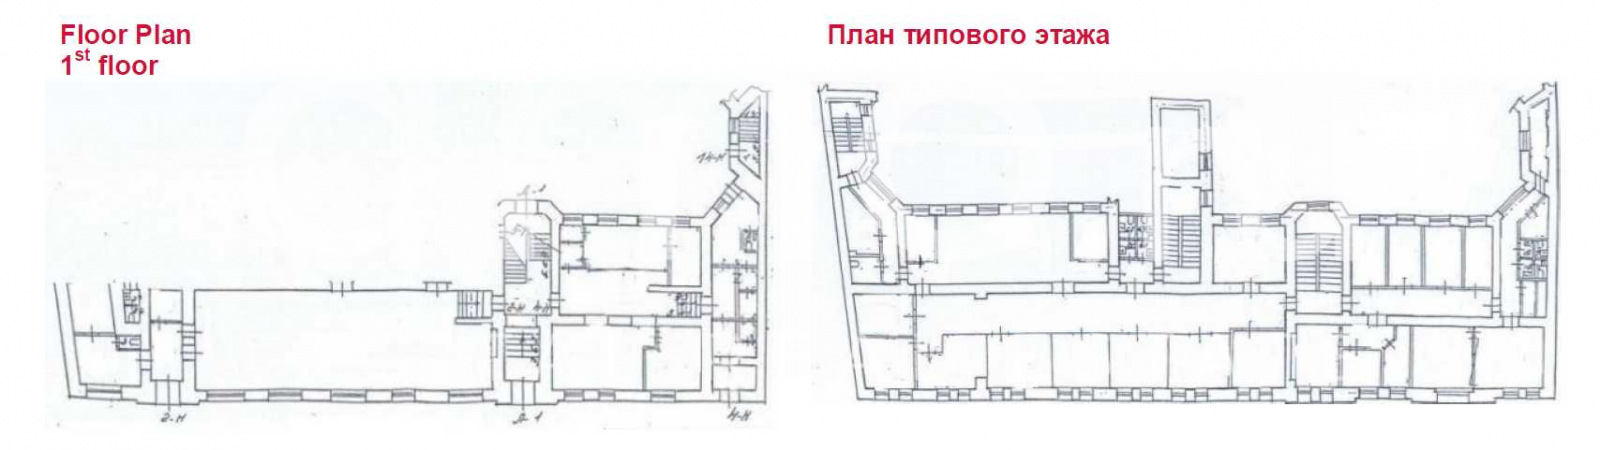 Планировка офиса 2300 м², 1 этаж, Административное здание «Звенигородская 20»